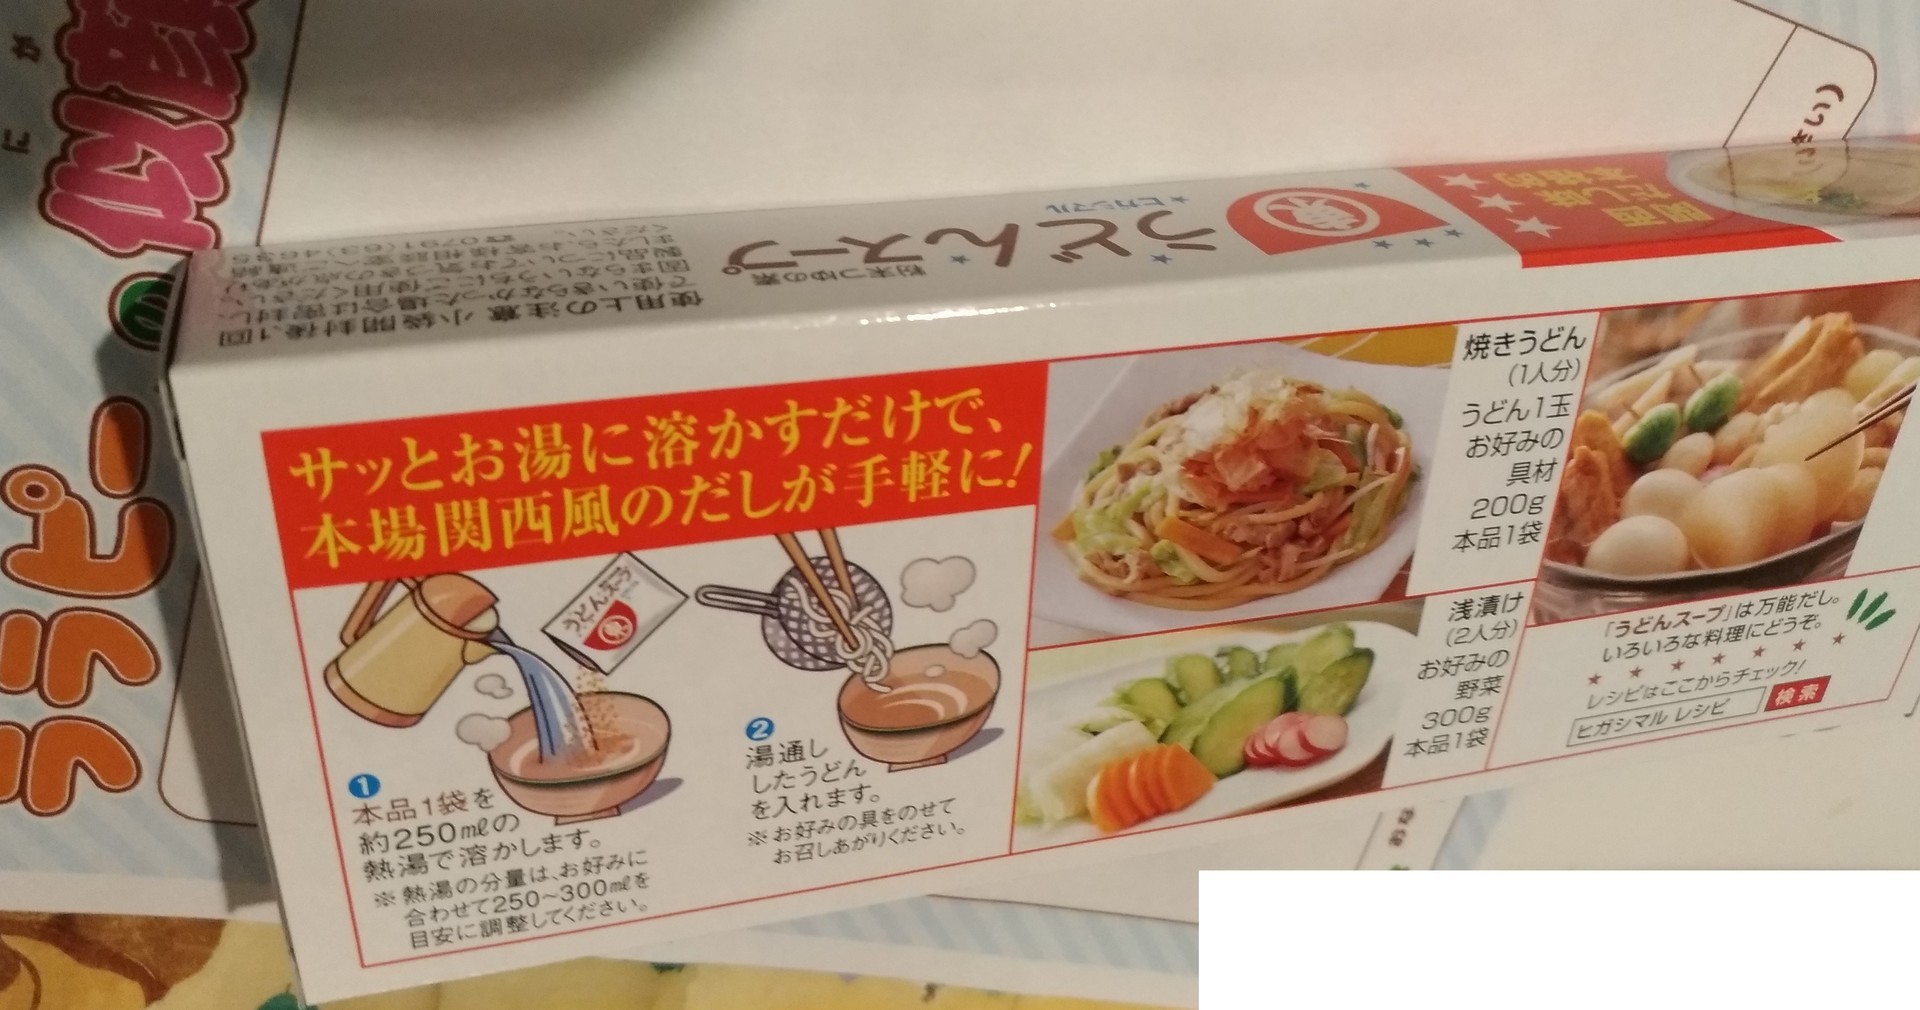 うどんスープ ヒガシマル粉末つゆ素関西だし味スーパーライフ スーパーライフ 大阪おすすめお惣菜野菜をブログでポイントも